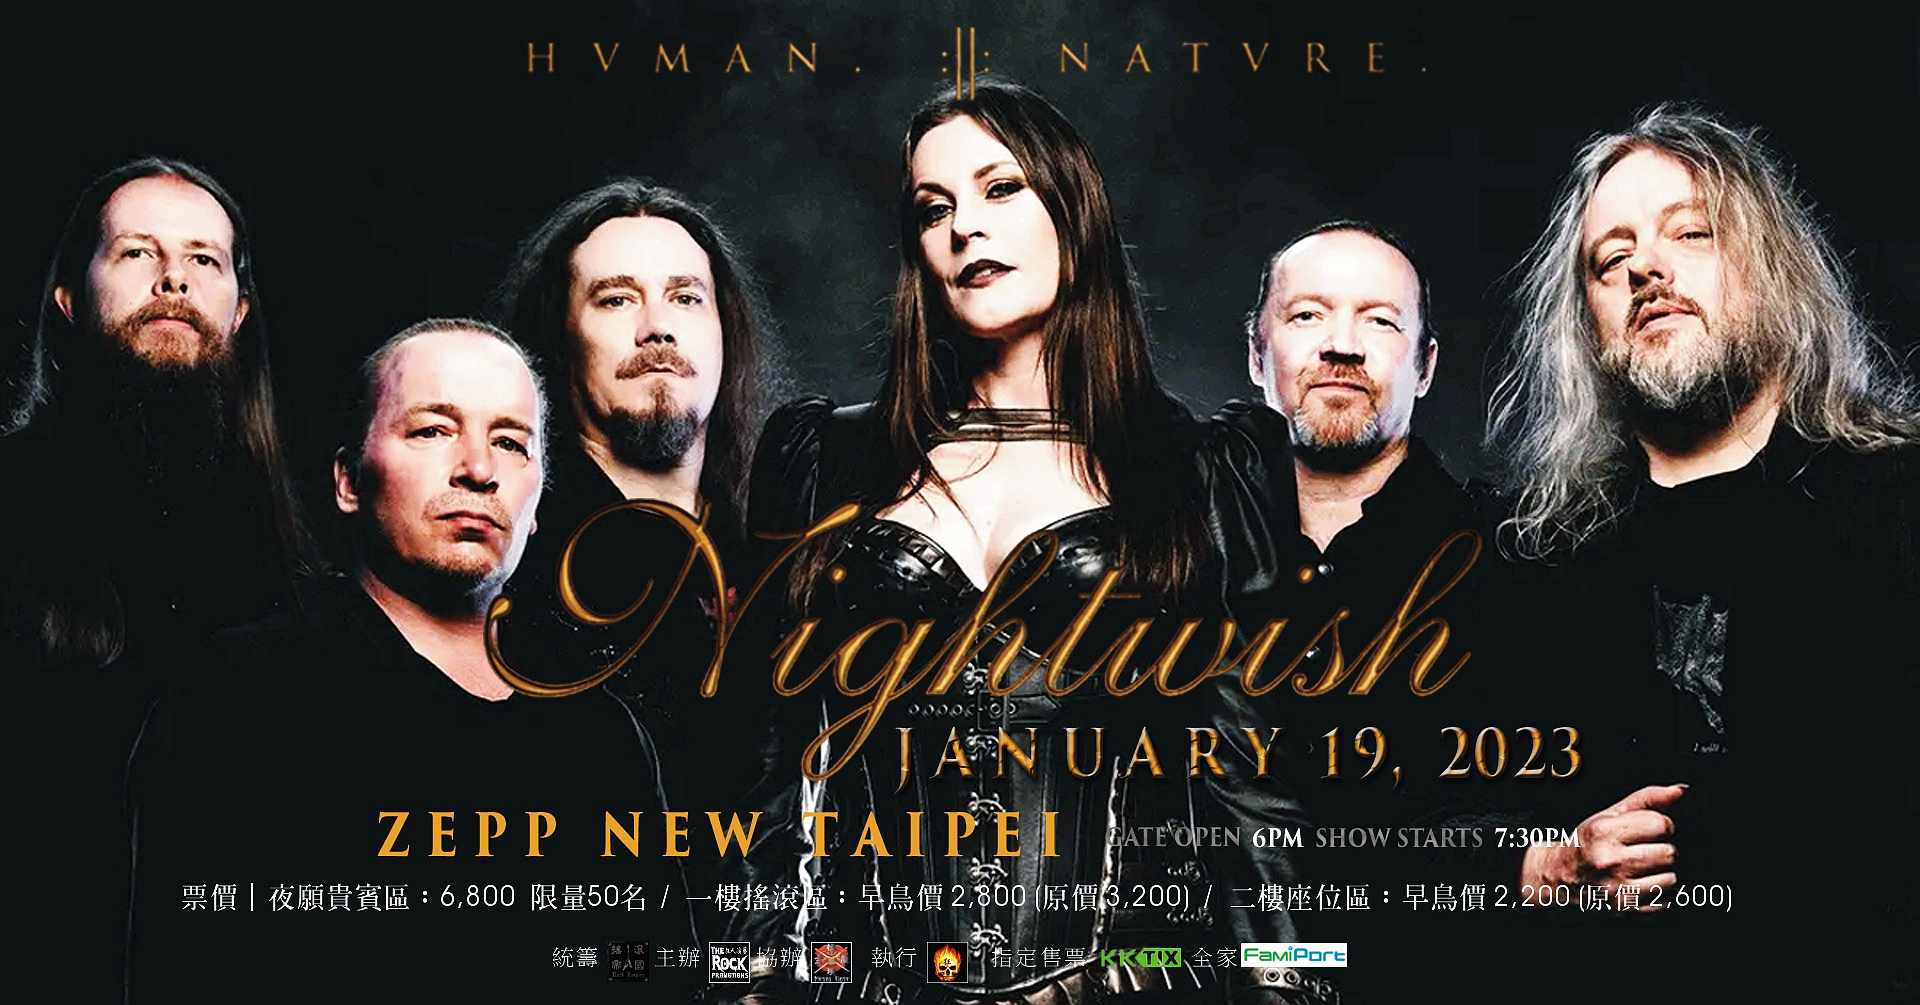 nightwish tour dates 2023